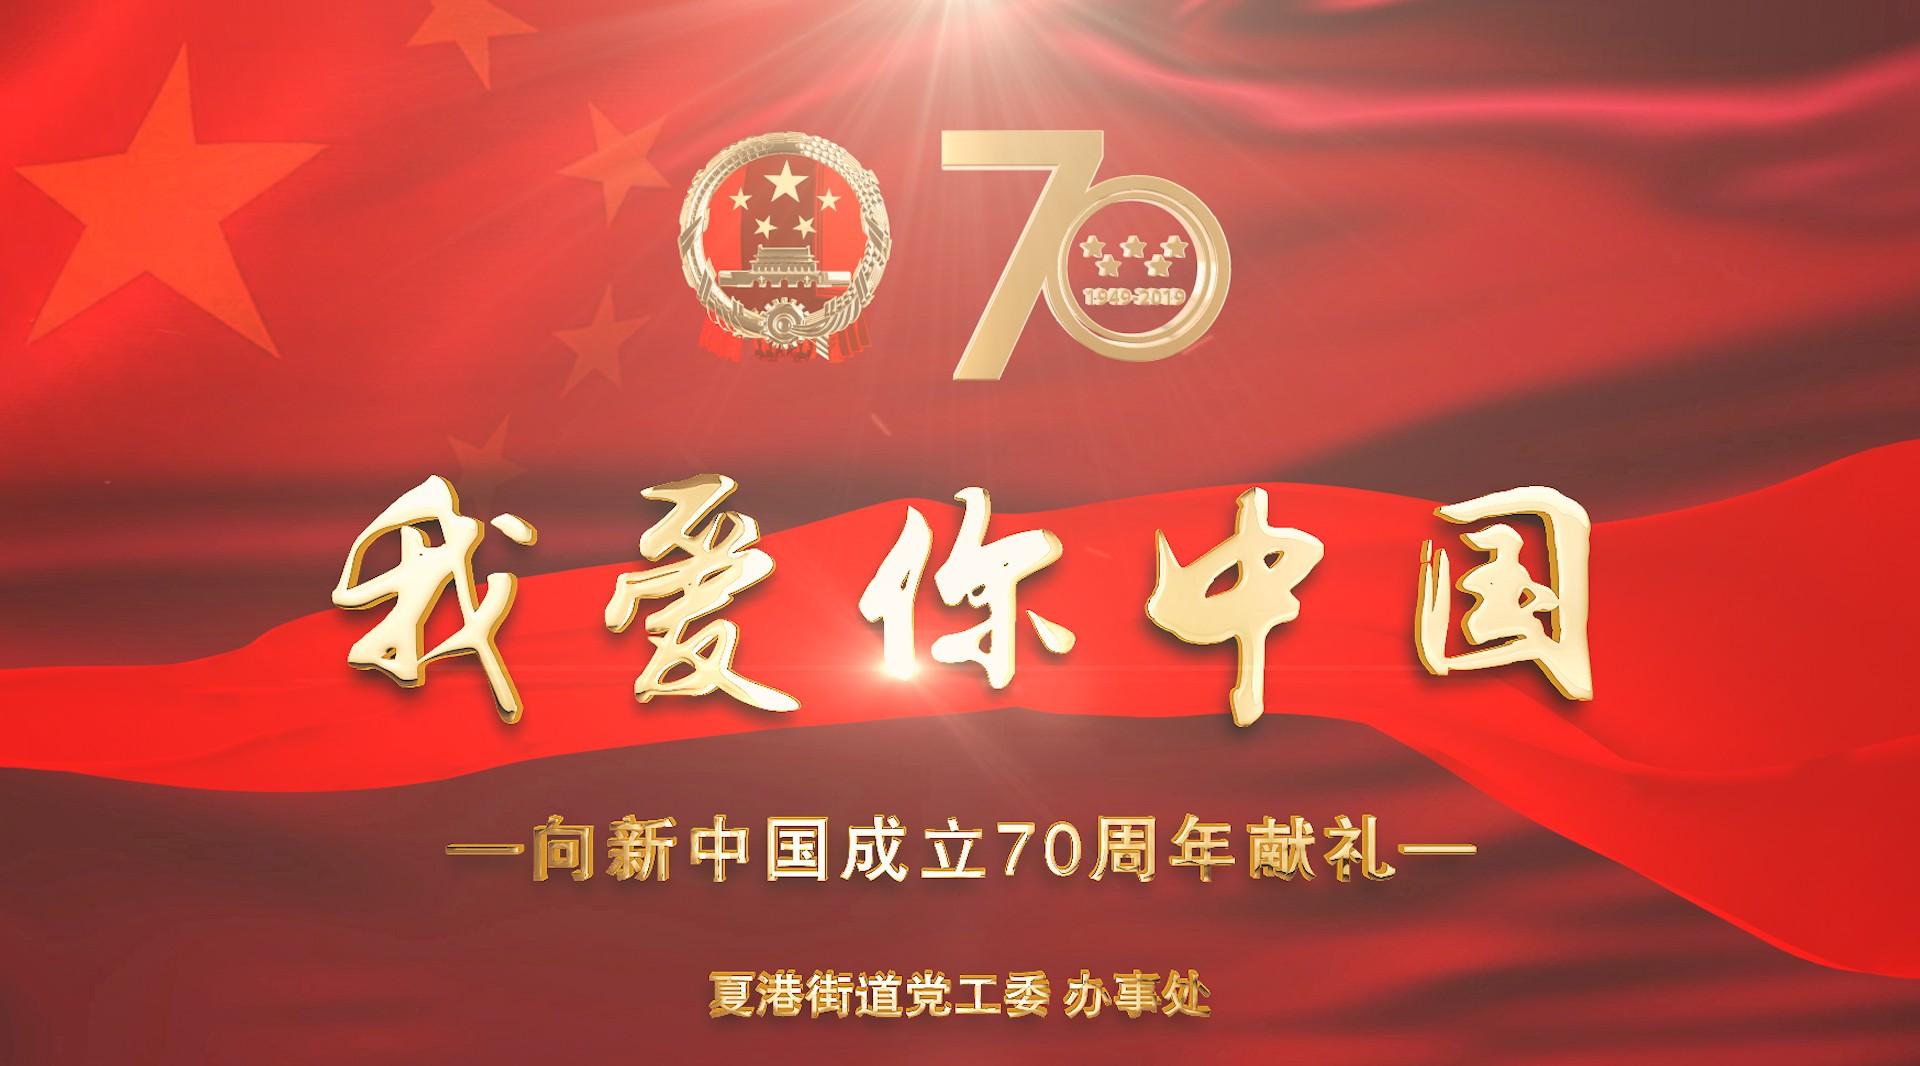 《我爱你中国》夏港街道 I 新中国成立70周年献礼 I 星火中视影视